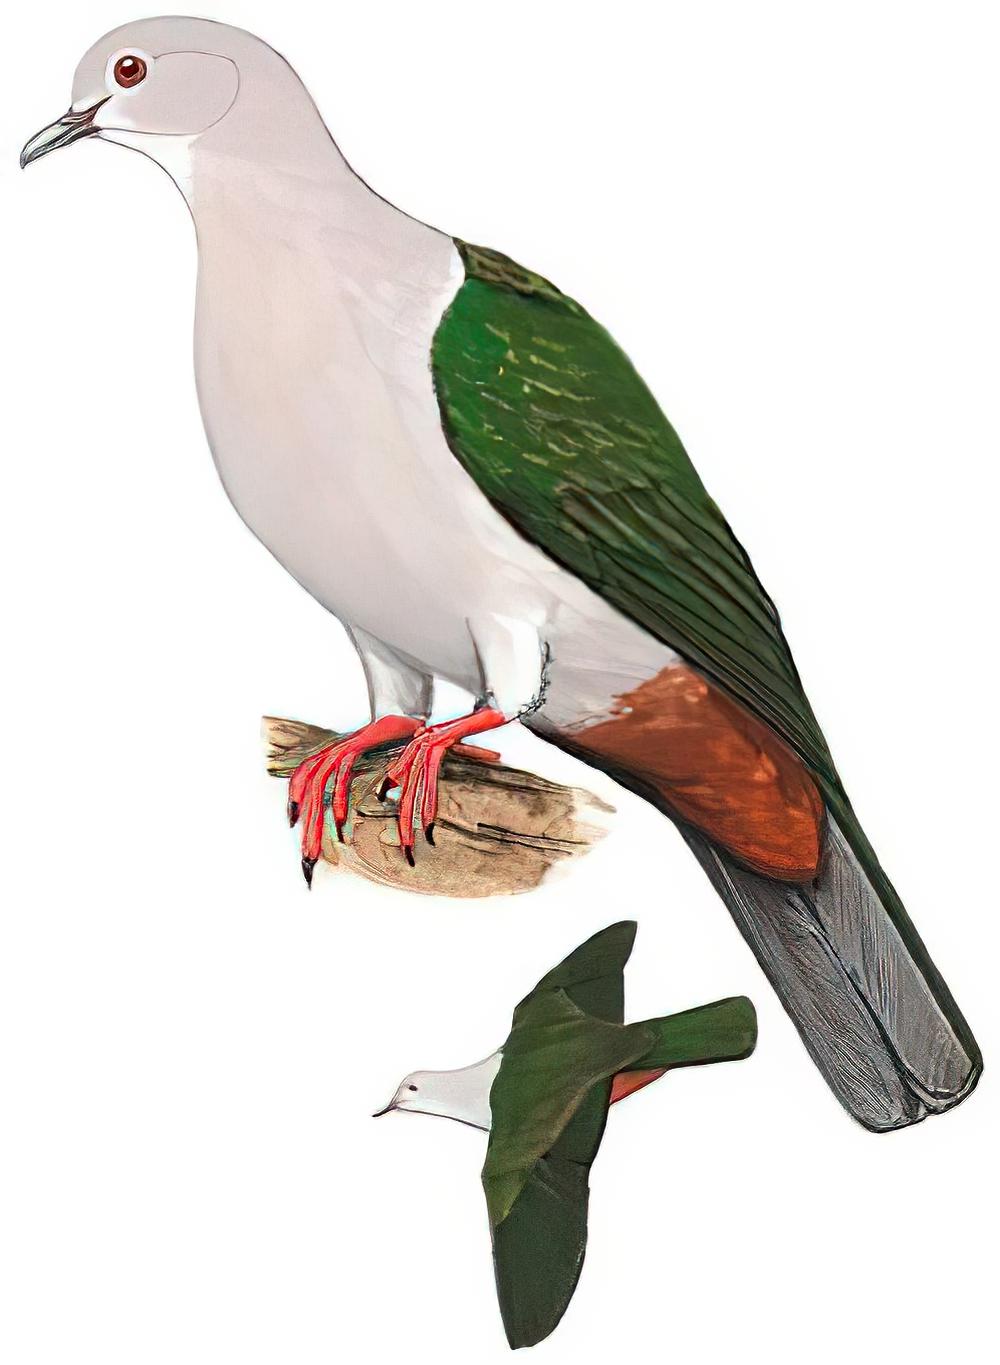 绿皇鸠 / Green Imperial Pigeon / Ducula aenea